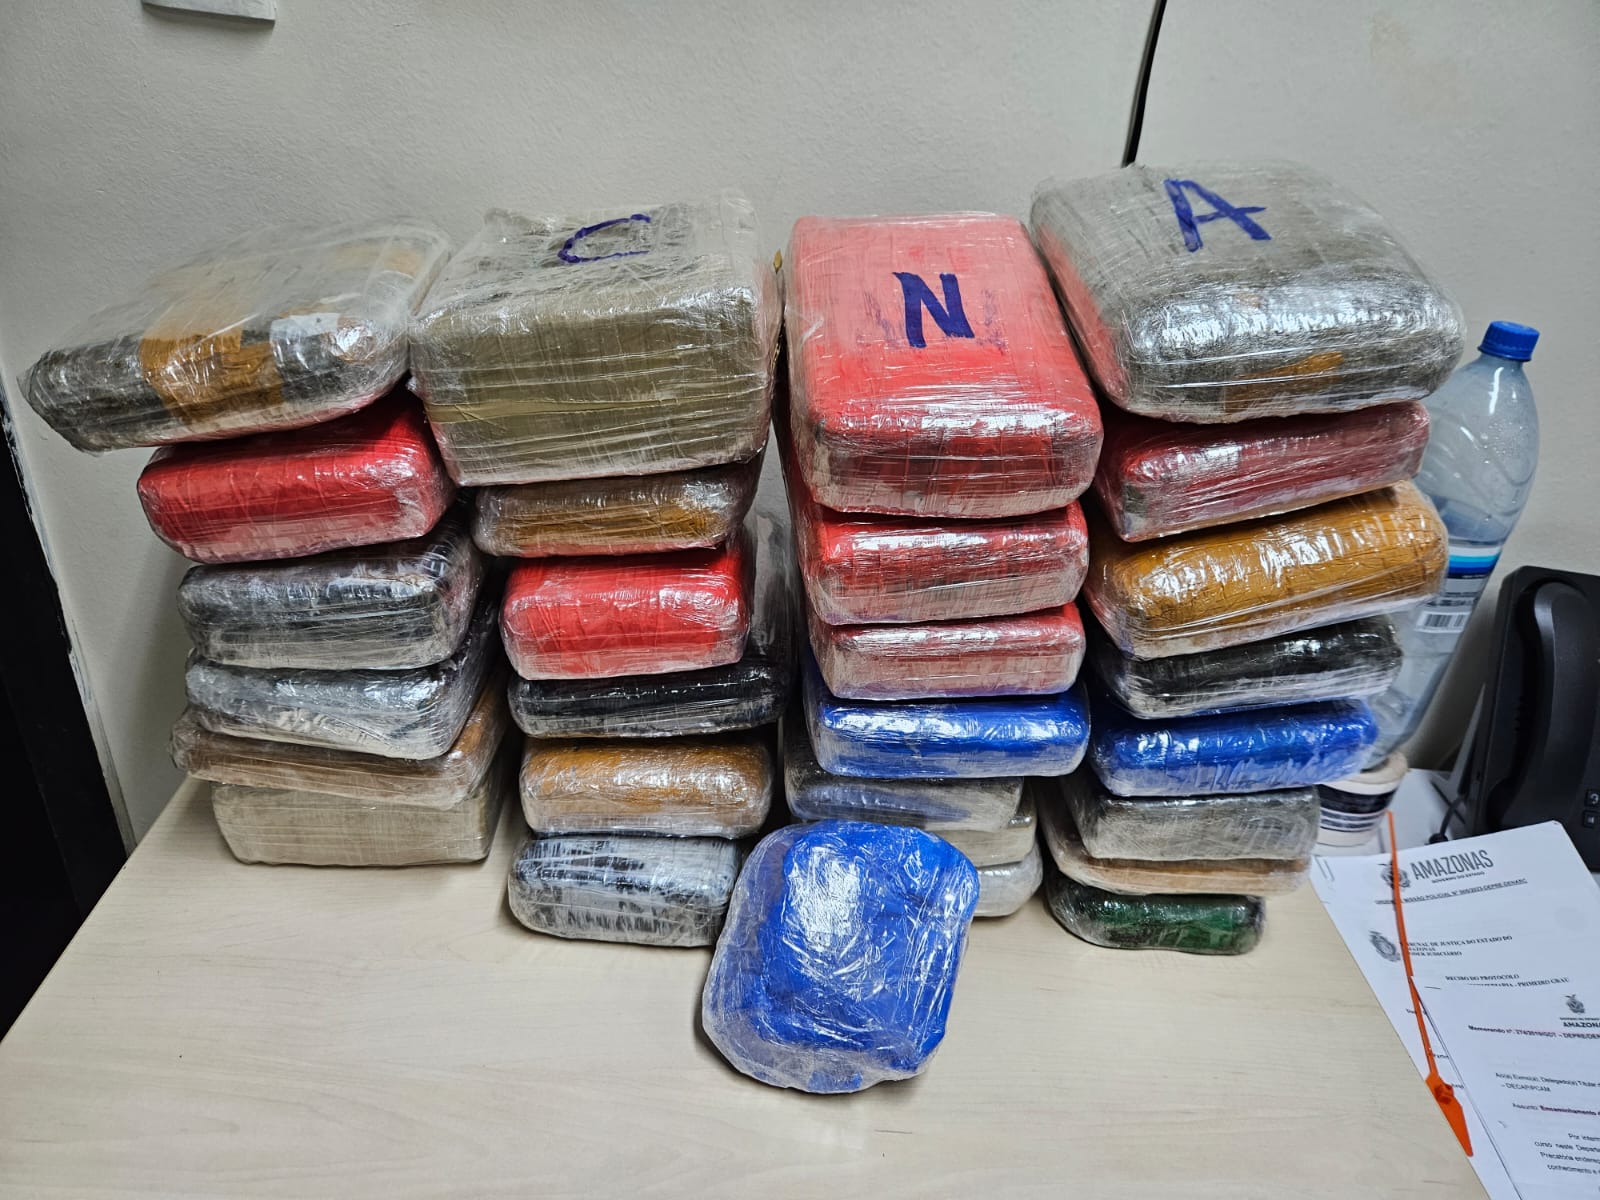 Foram apreendidos 31 quilos de drogas entre maconha e oxi – Foto: Divulgação/PC-AM